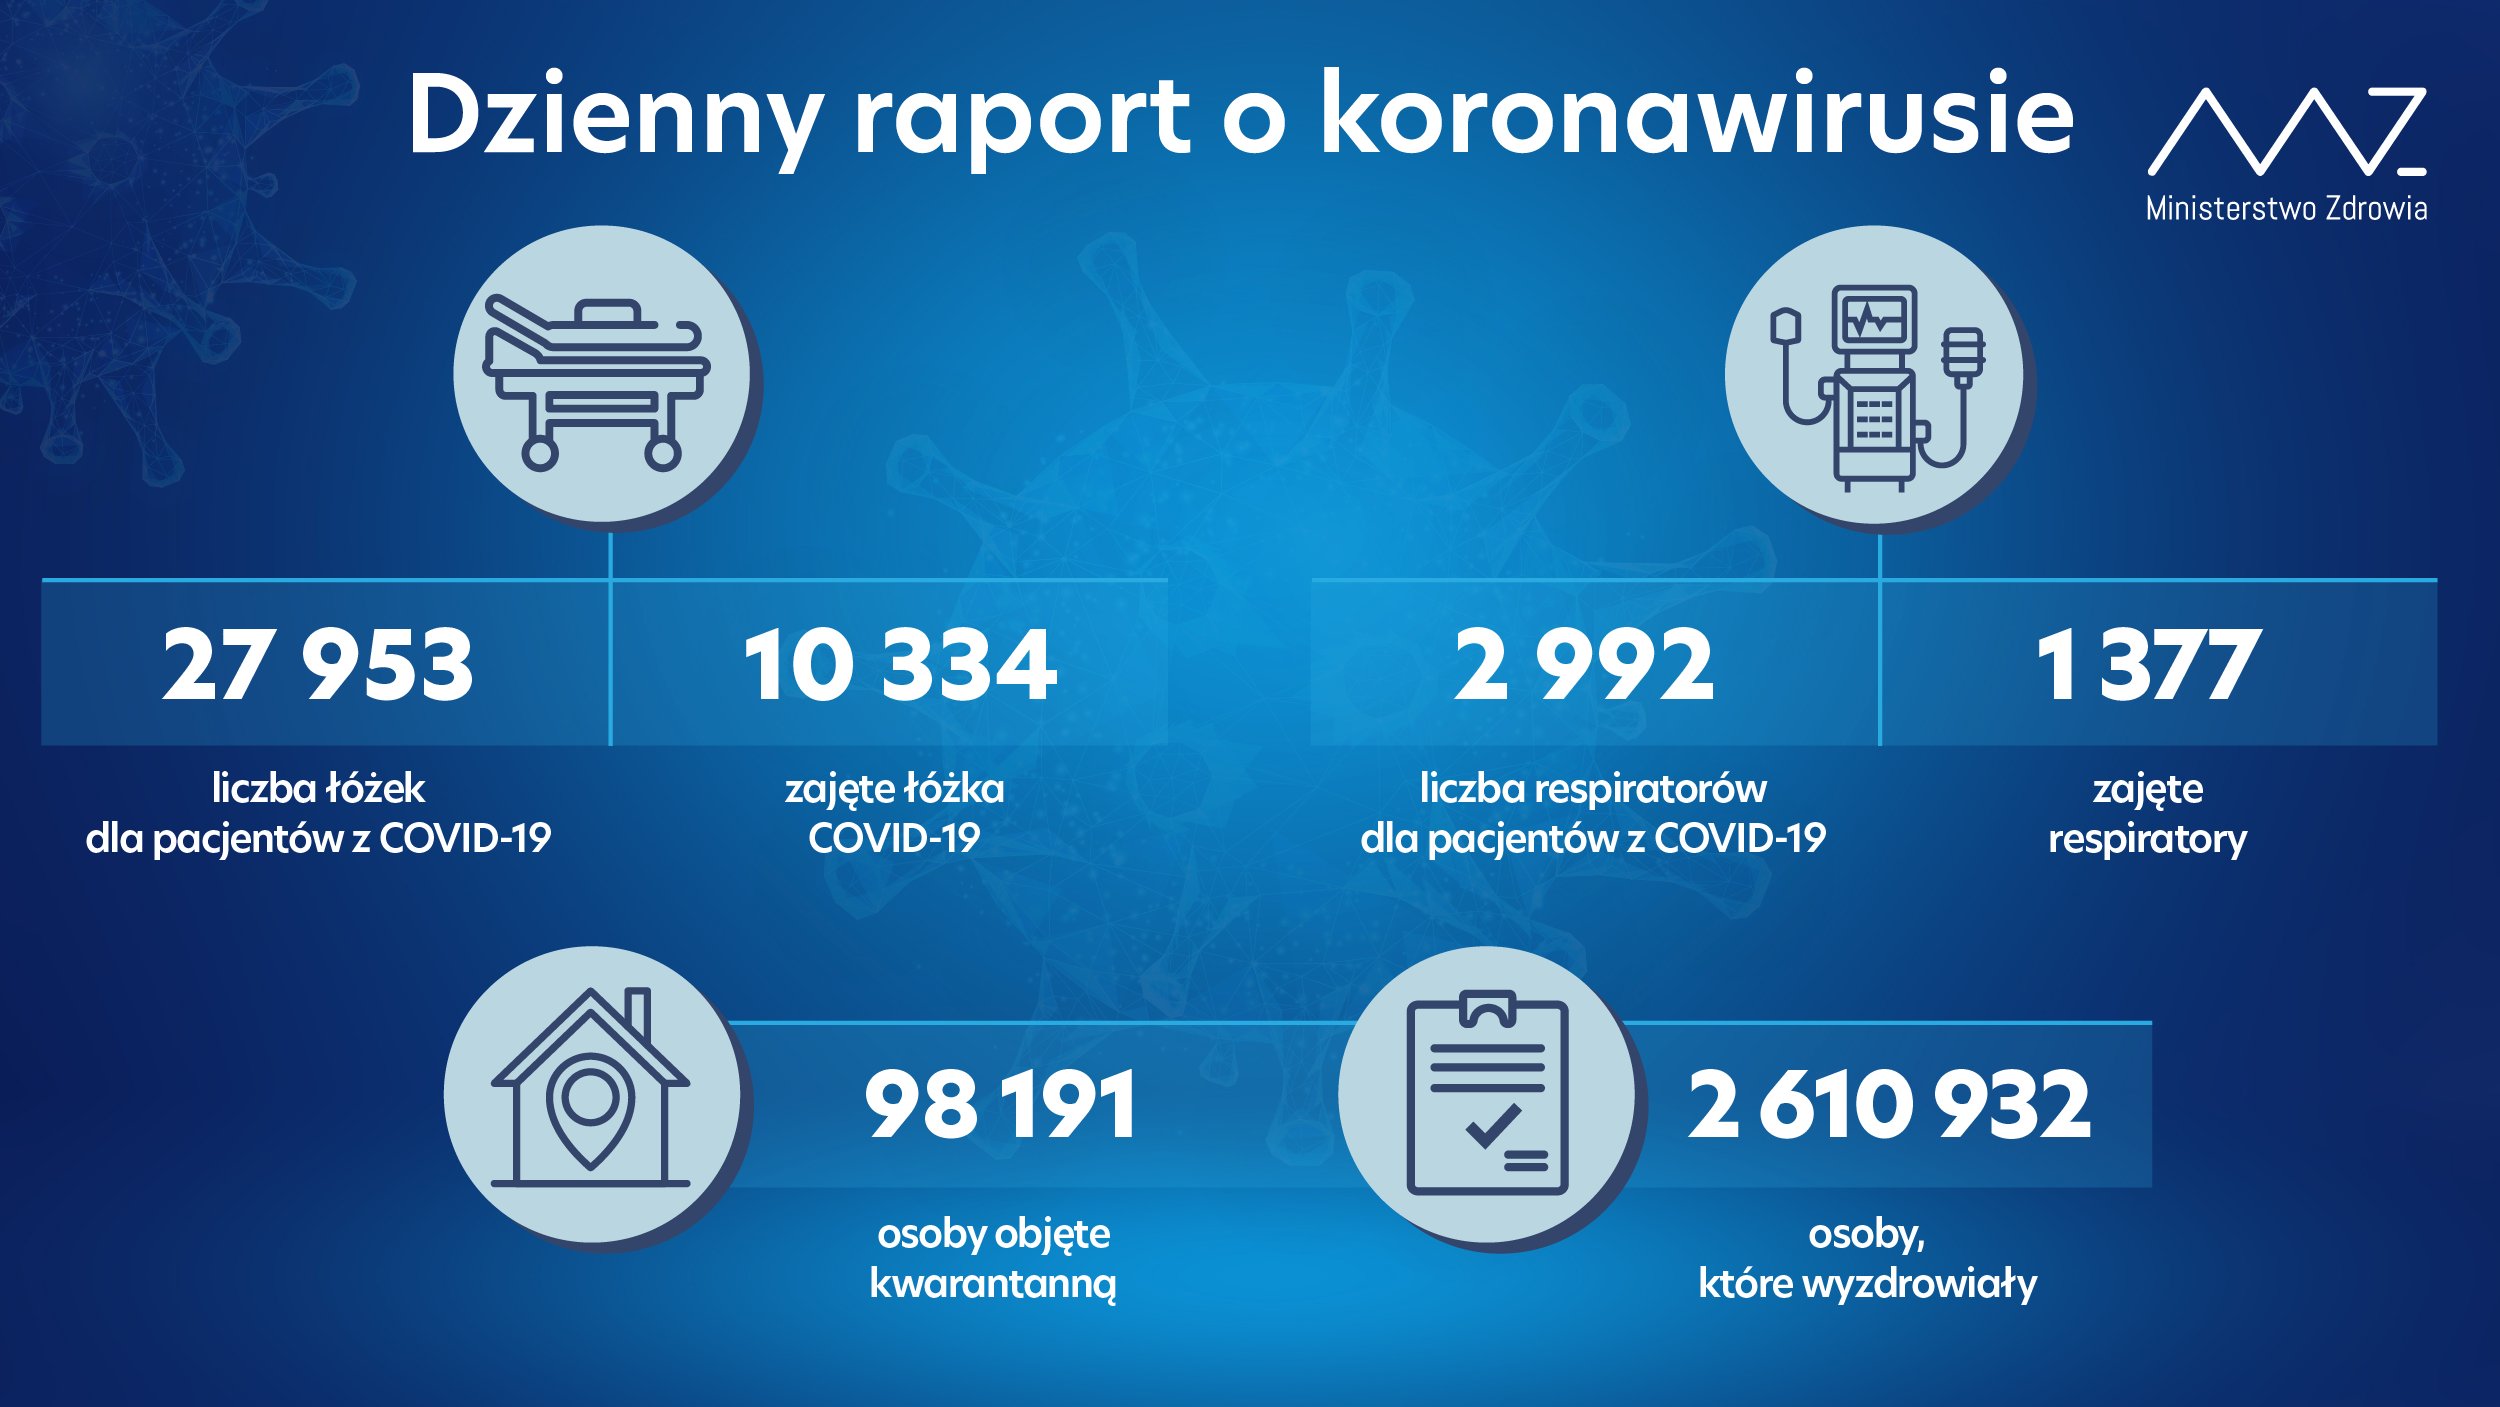 2 344 nowe zakażenia koronawirusem w kraju, 329 zgonów osób z infekcją COVID-19